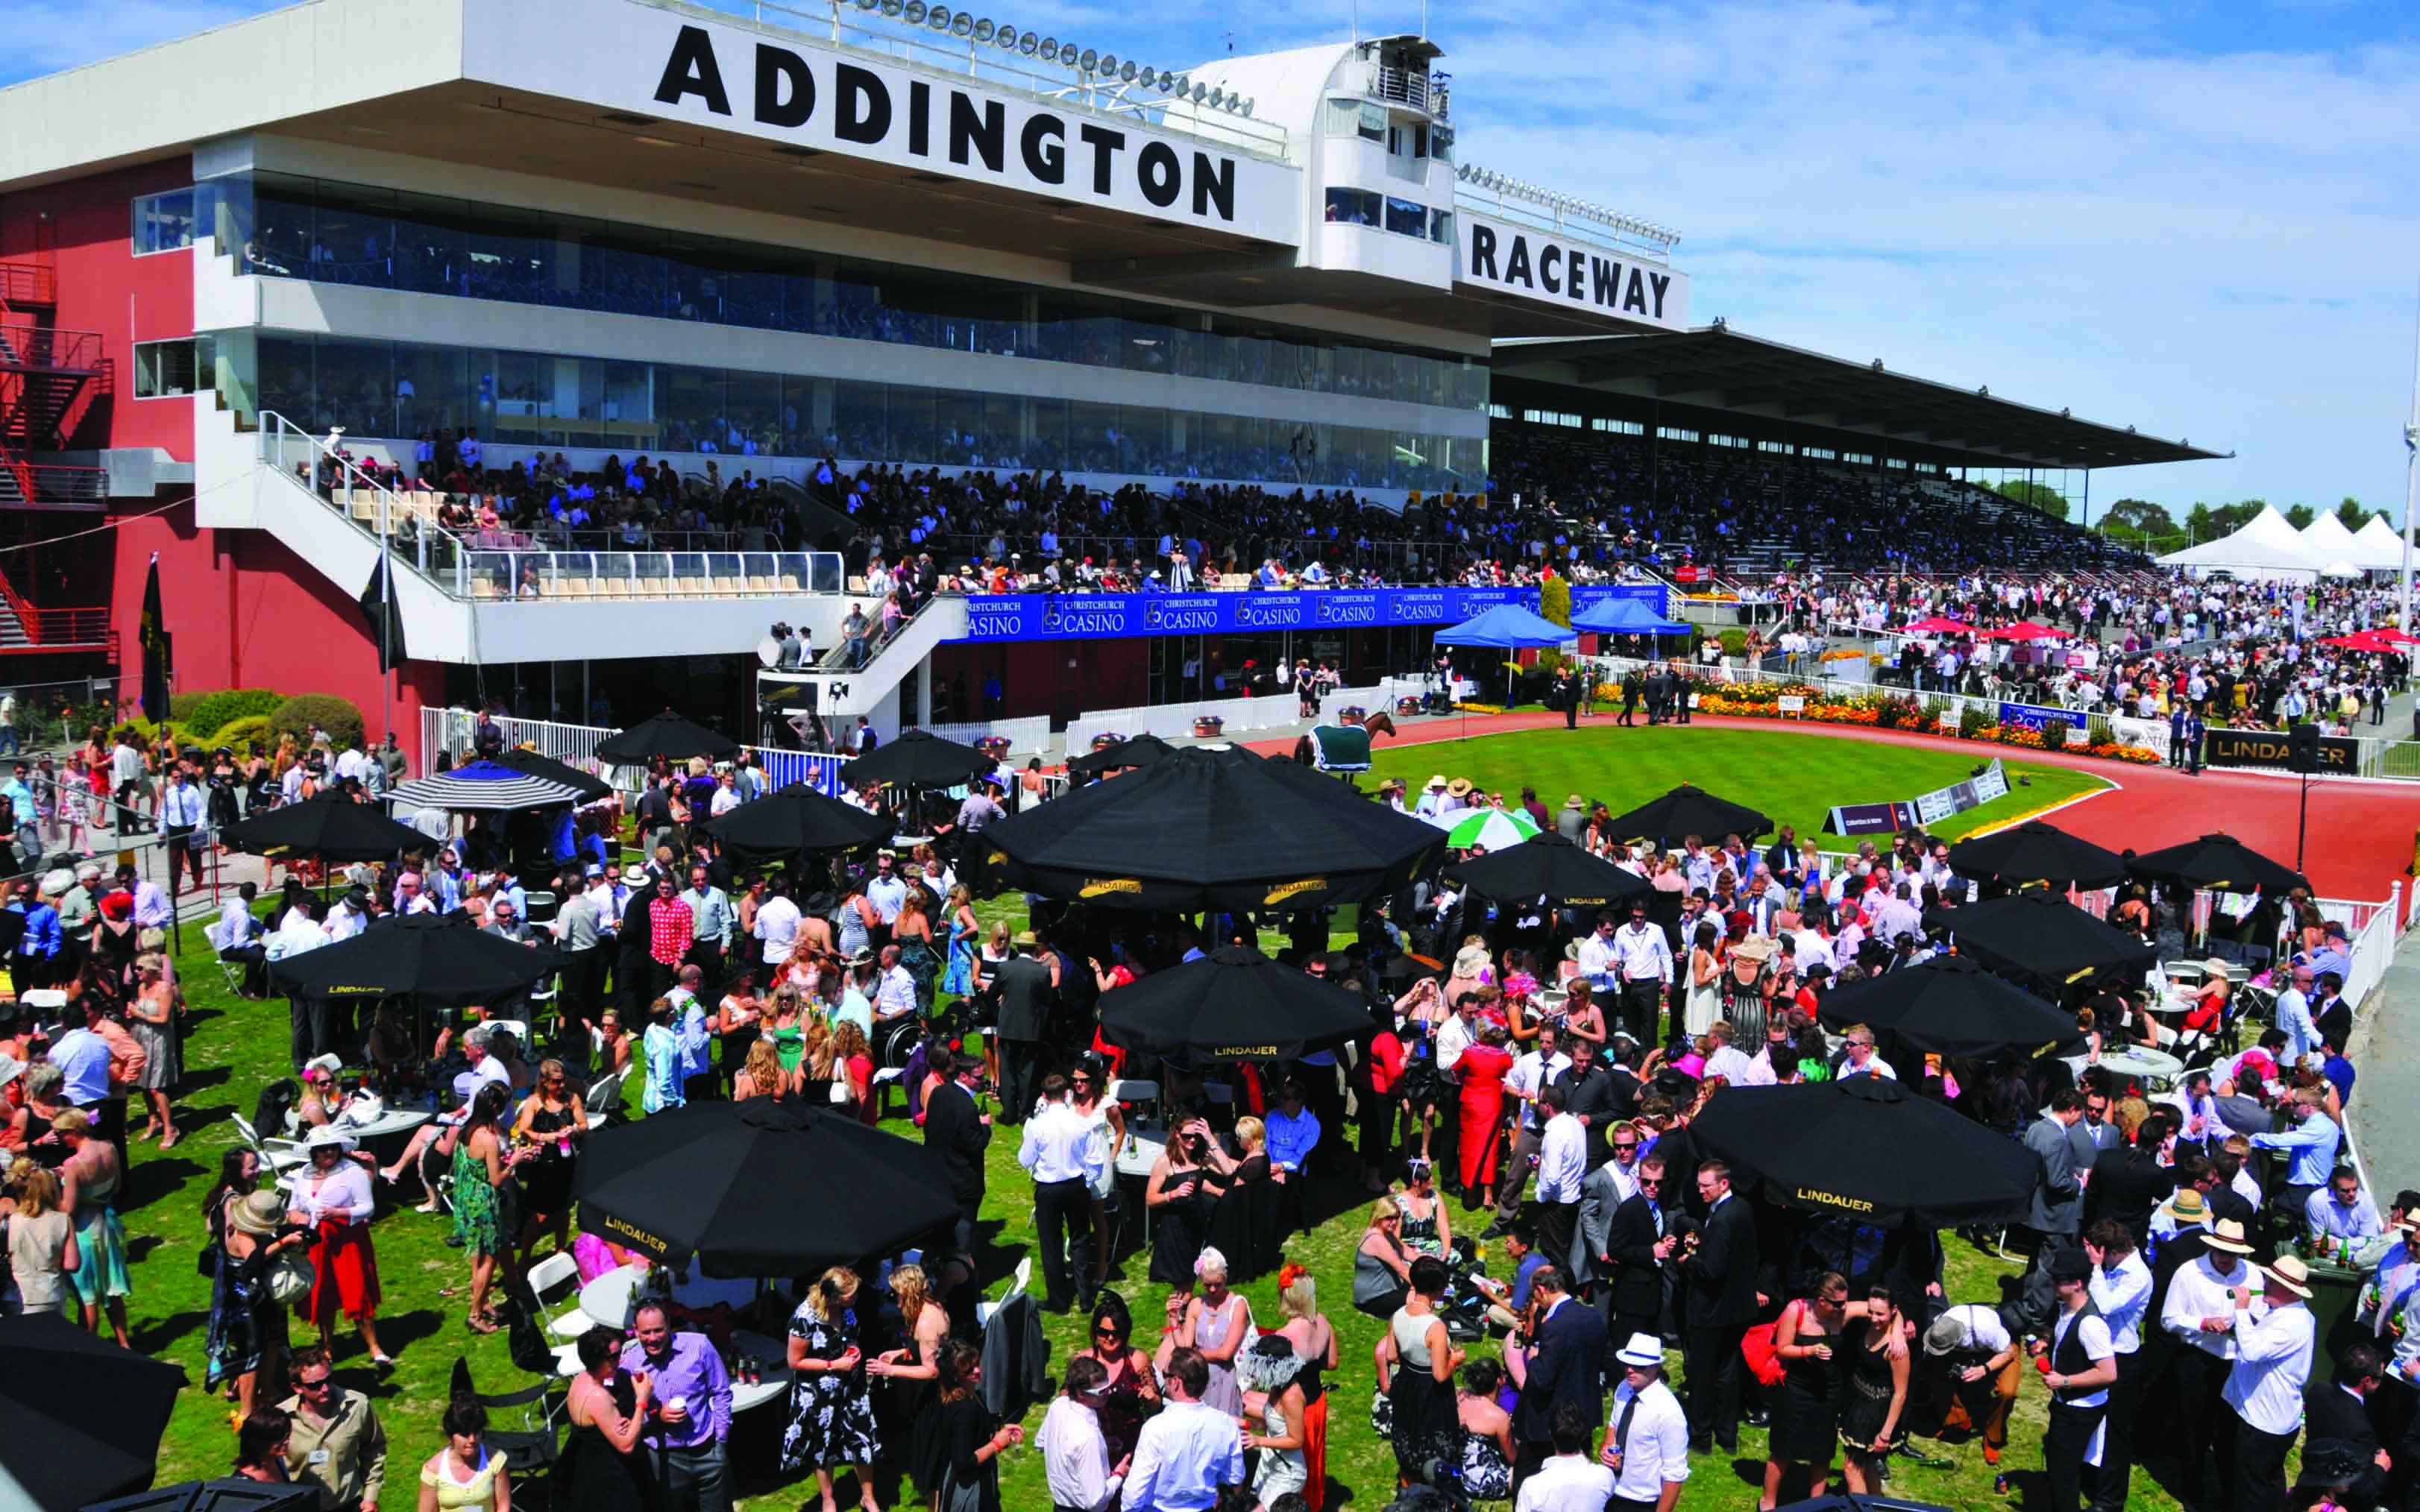 Christchurch Venue - Addington Raceway and Events Centre